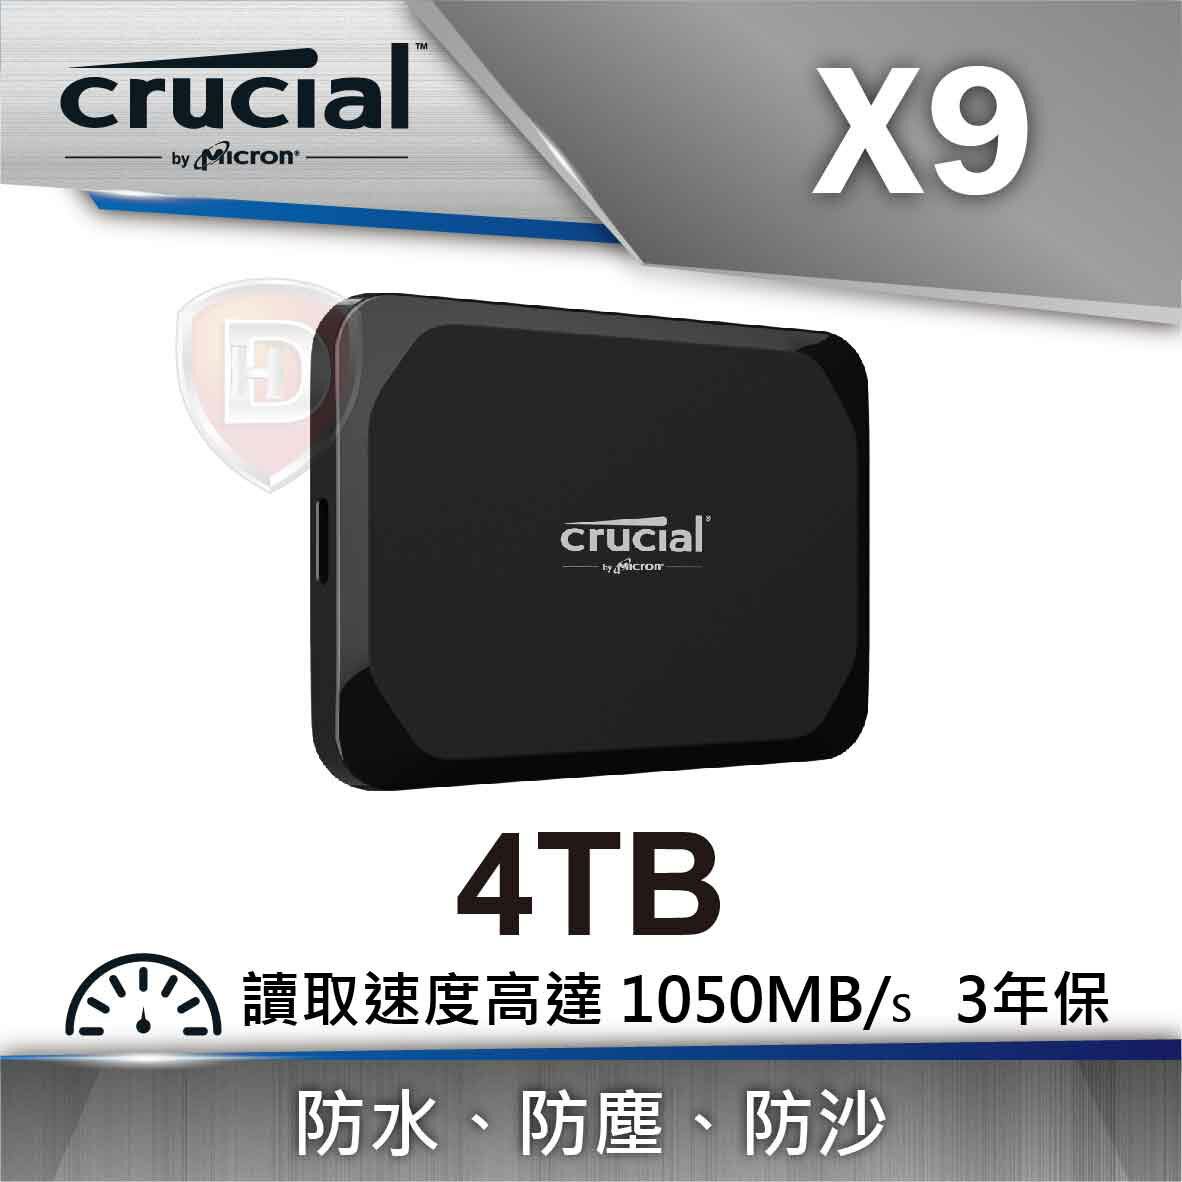 【hd數位3c】美光 Micron Crucial X9 4TB【下標前請先詢問 有無庫存】